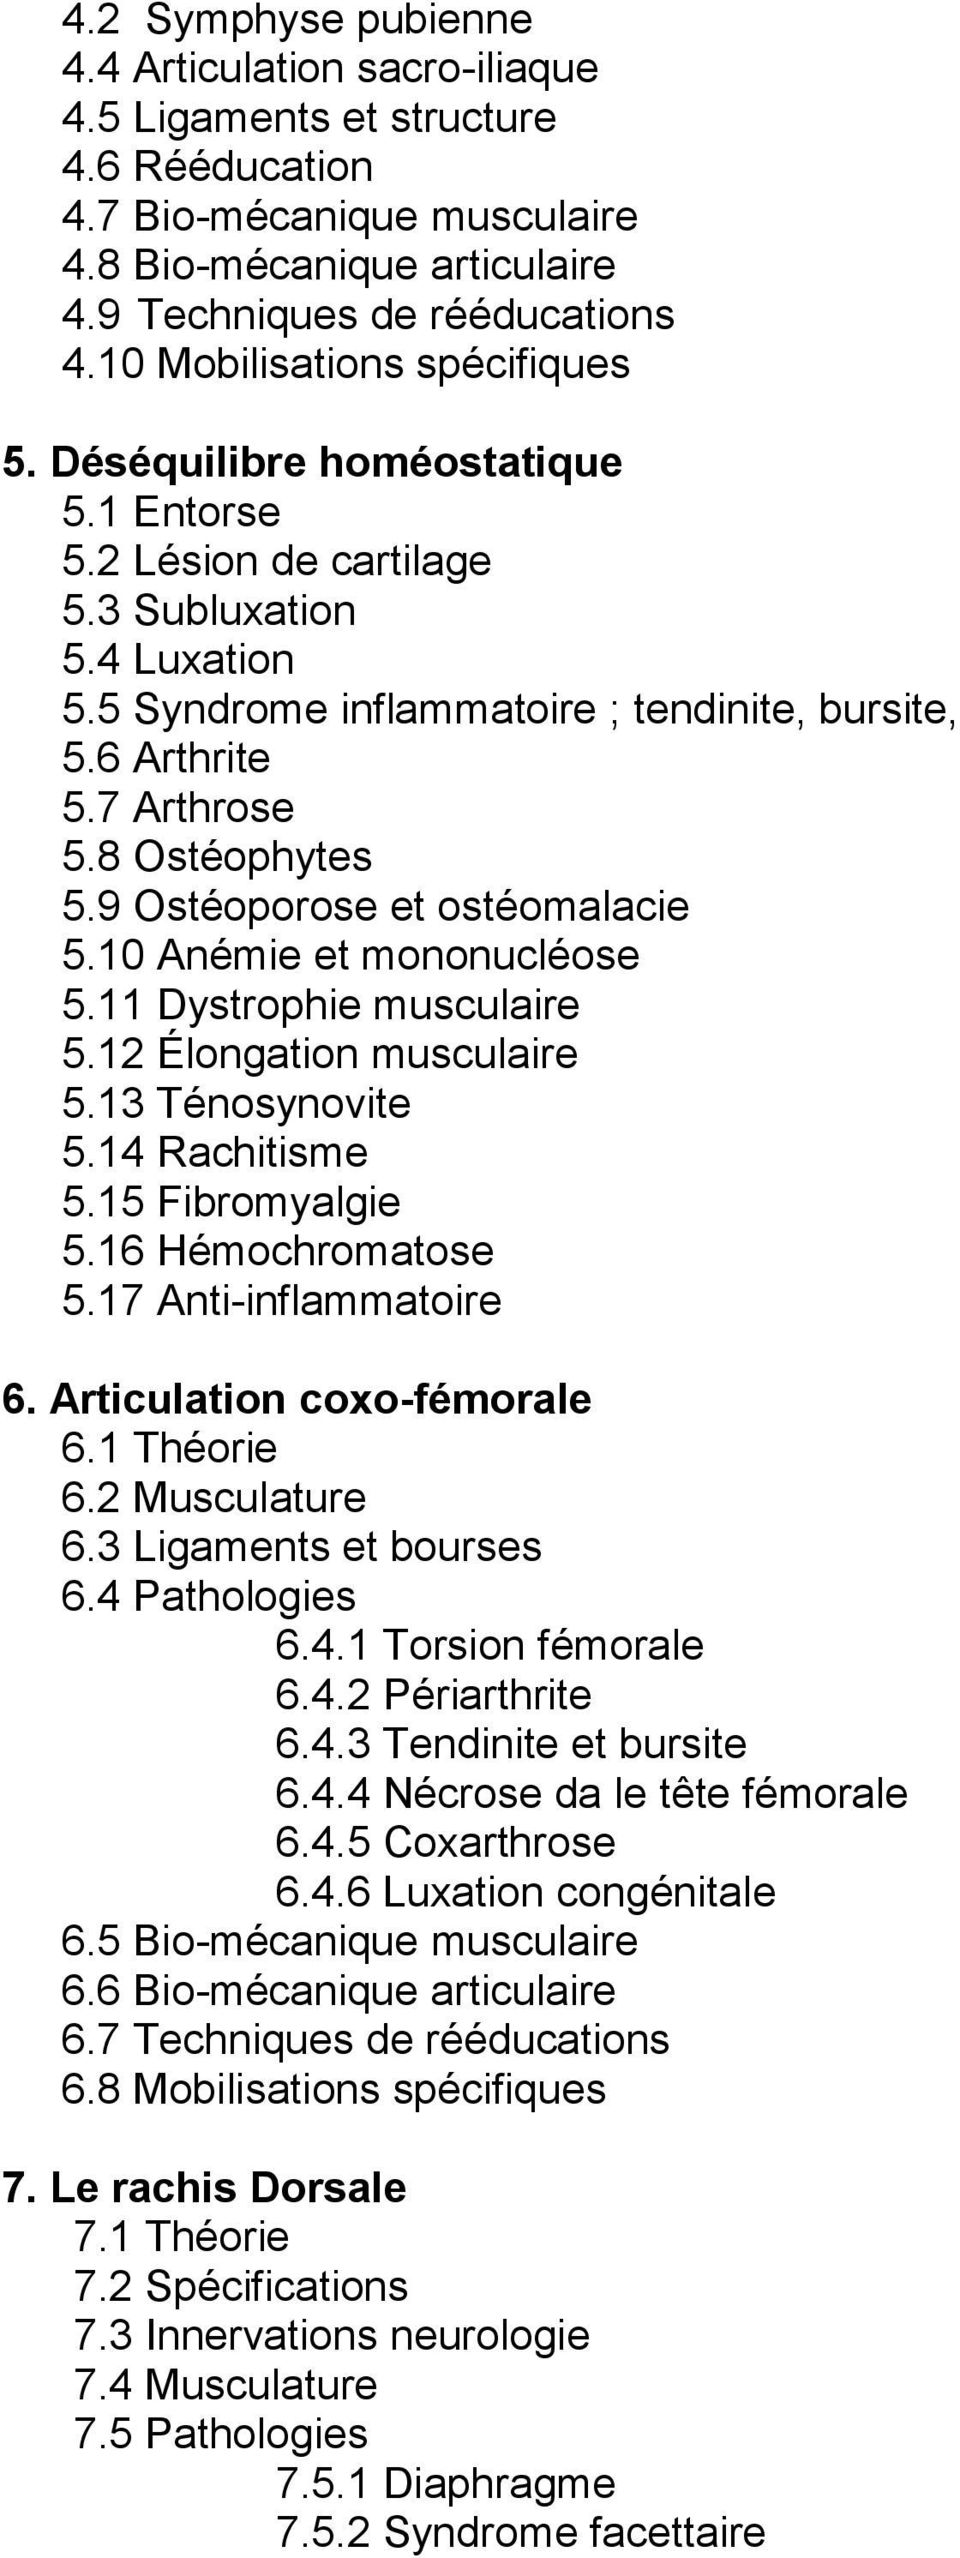 7 Arthrose 5.8 Ostéophytes 5.9 Ostéoporose et ostéomalacie 5.10 Anémie et mononucléose 5.11 Dystrophie musculaire 5.12 Élongation musculaire 5.13 Ténosynovite 5.14 Rachitisme 5.15 Fibromyalgie 5.